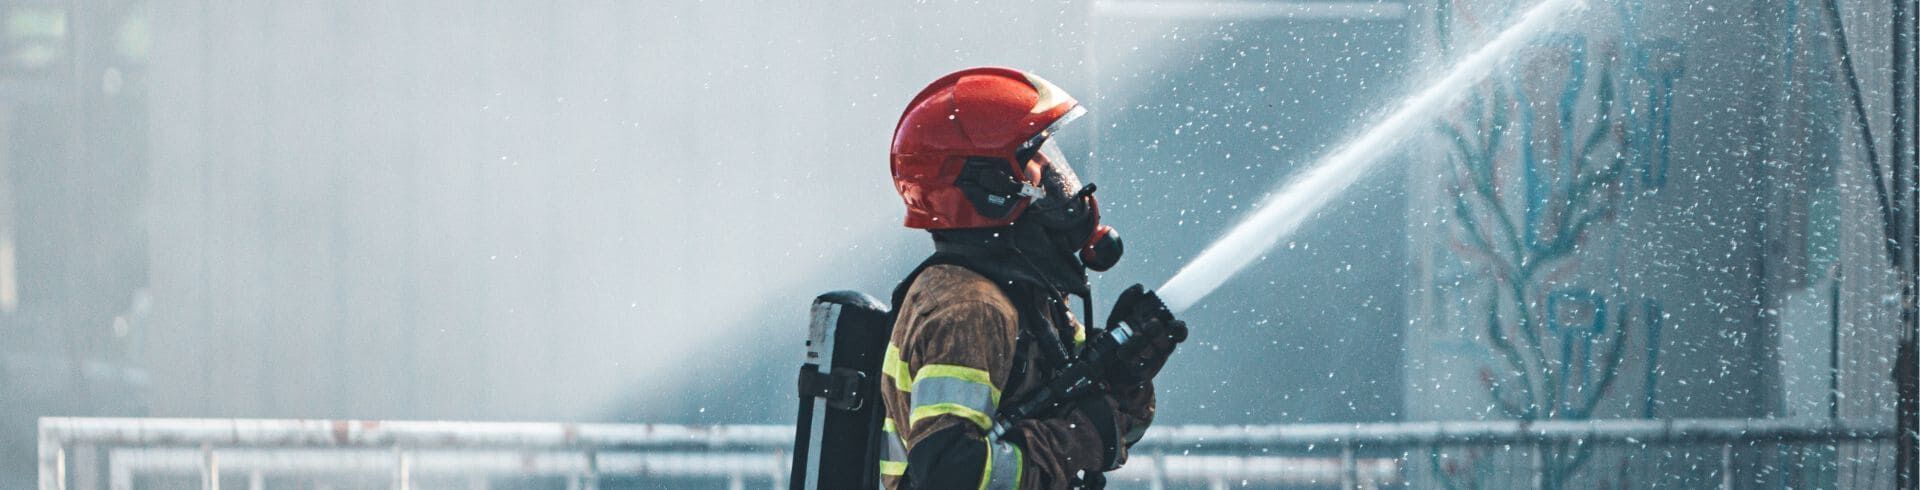 Les différents grades des sapeurs-pompiers expliqués